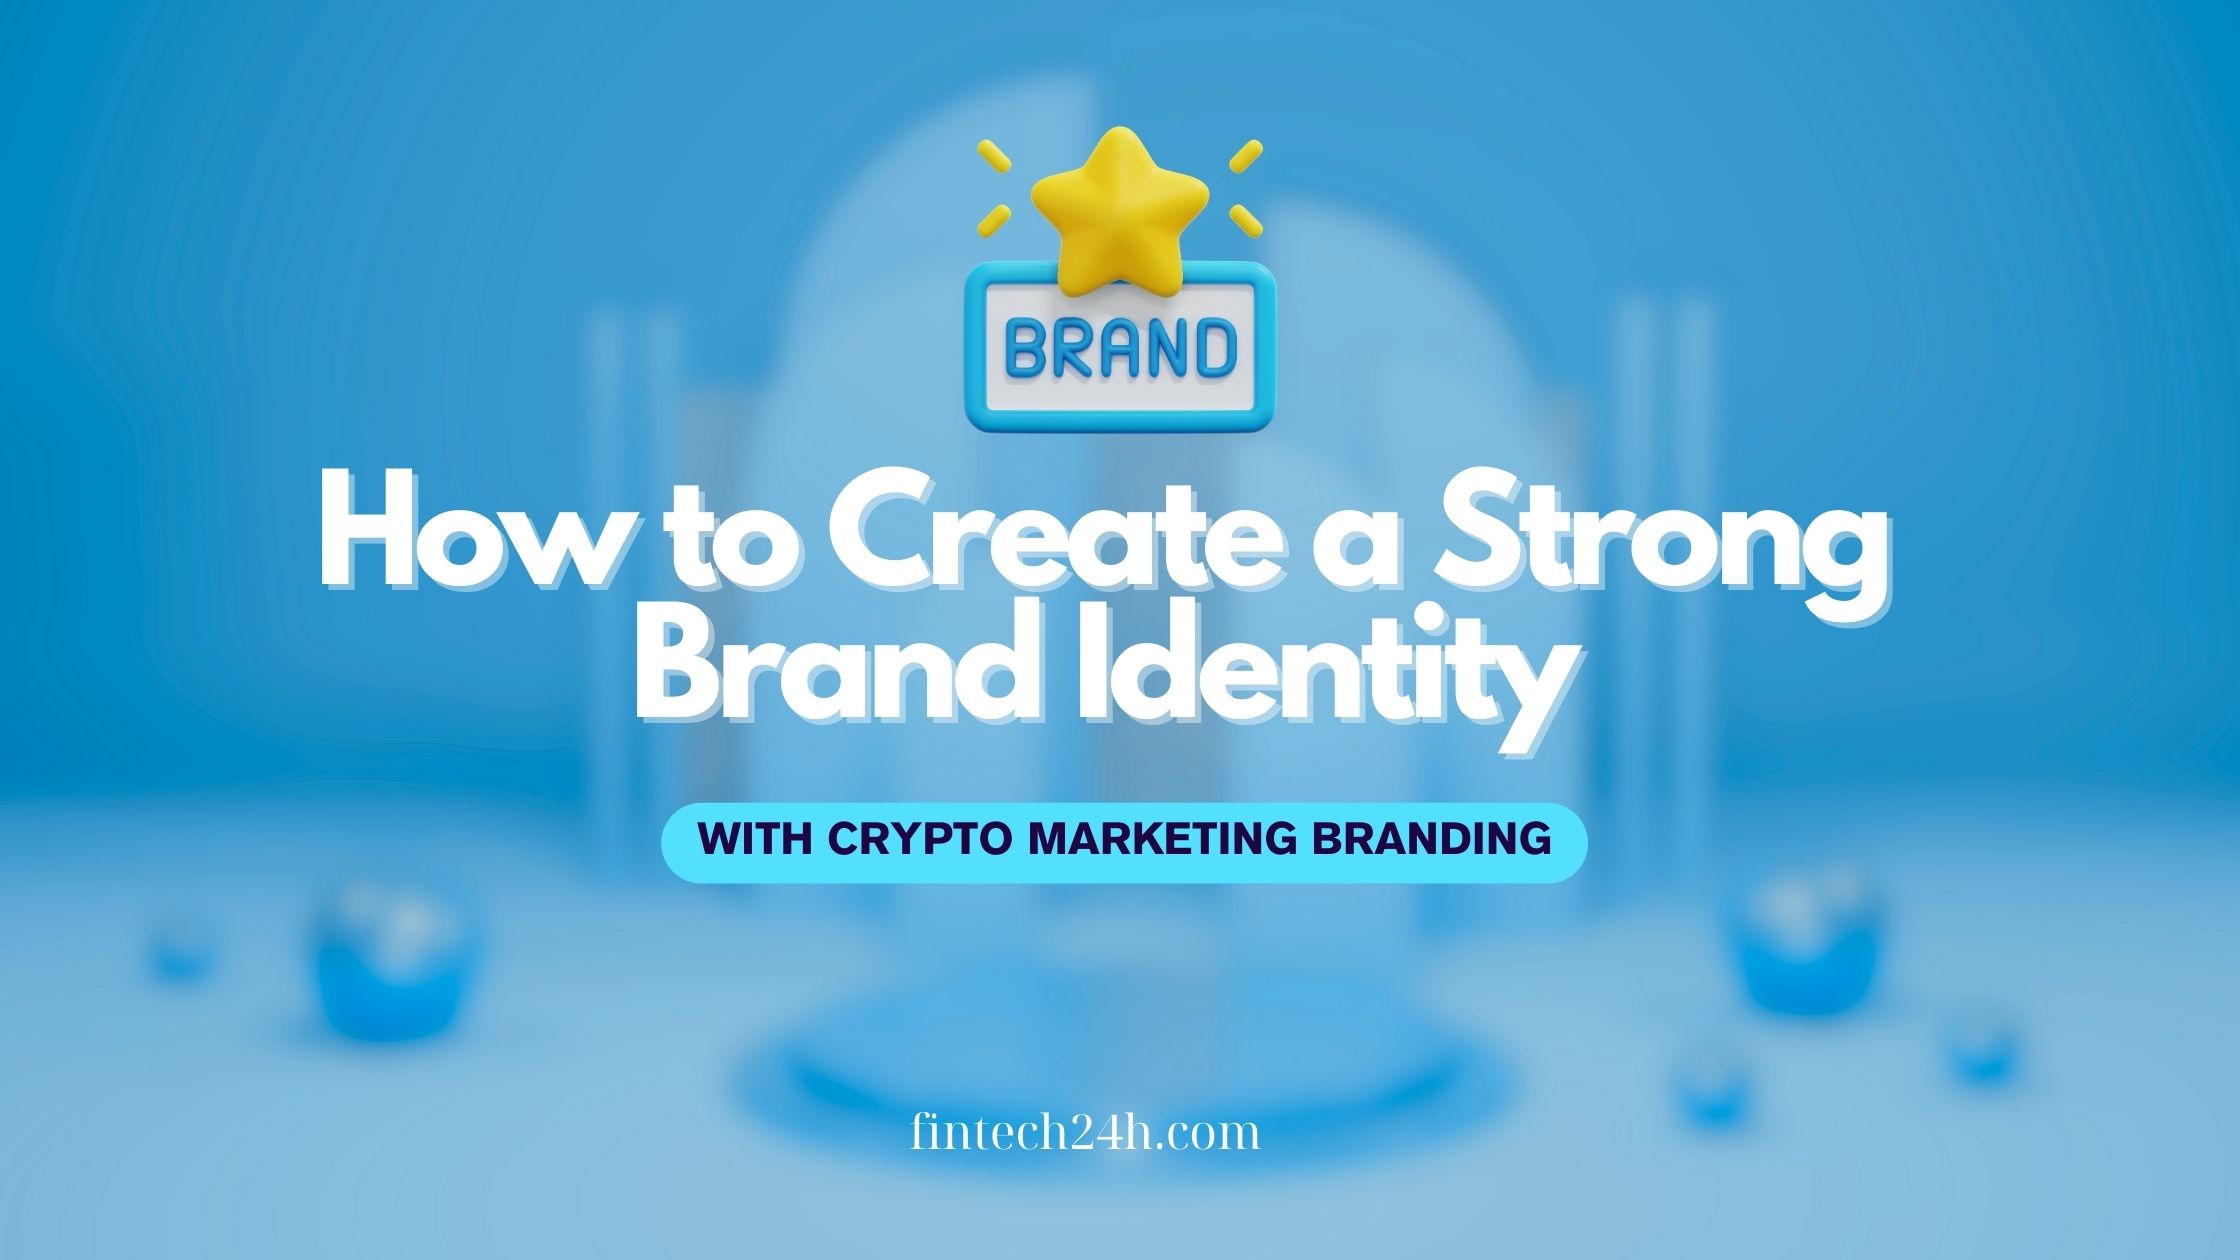 Crypto Marketing branding